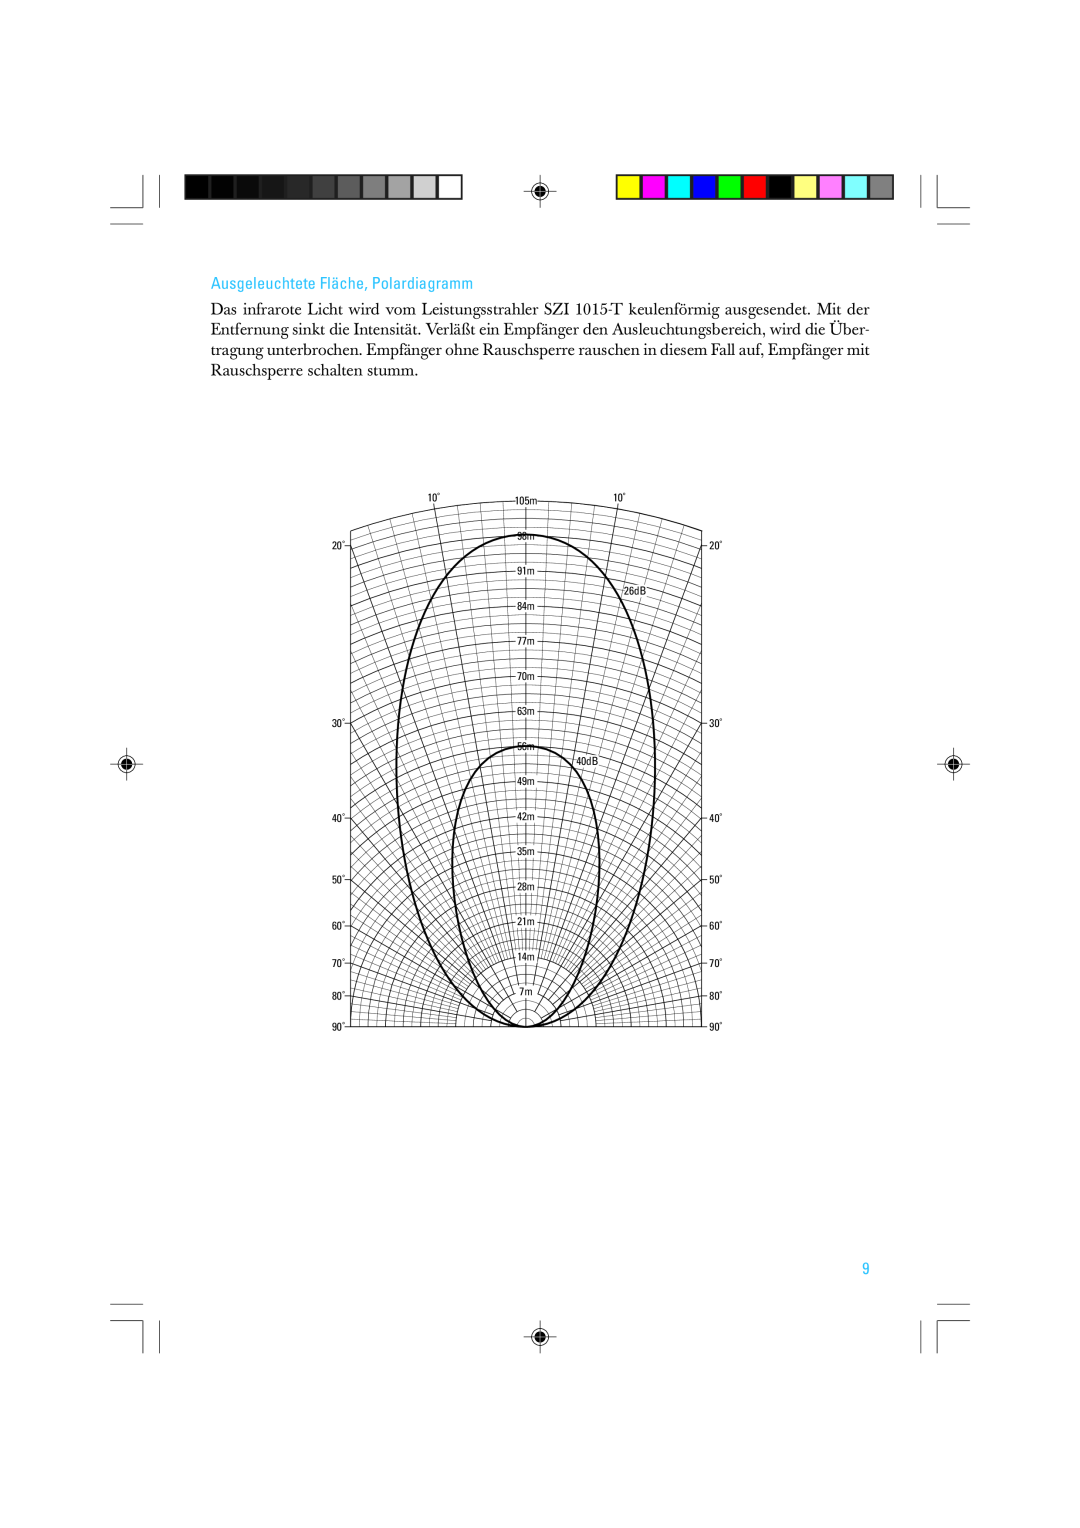 Sennheiser SZI 1015-T manual Ausgeleuchtete Fläche, Polardiagramm, 20˚ 30˚ 40˚ 50˚ 60˚ 70˚ 80˚ 90˚, 26dB, 40dB 